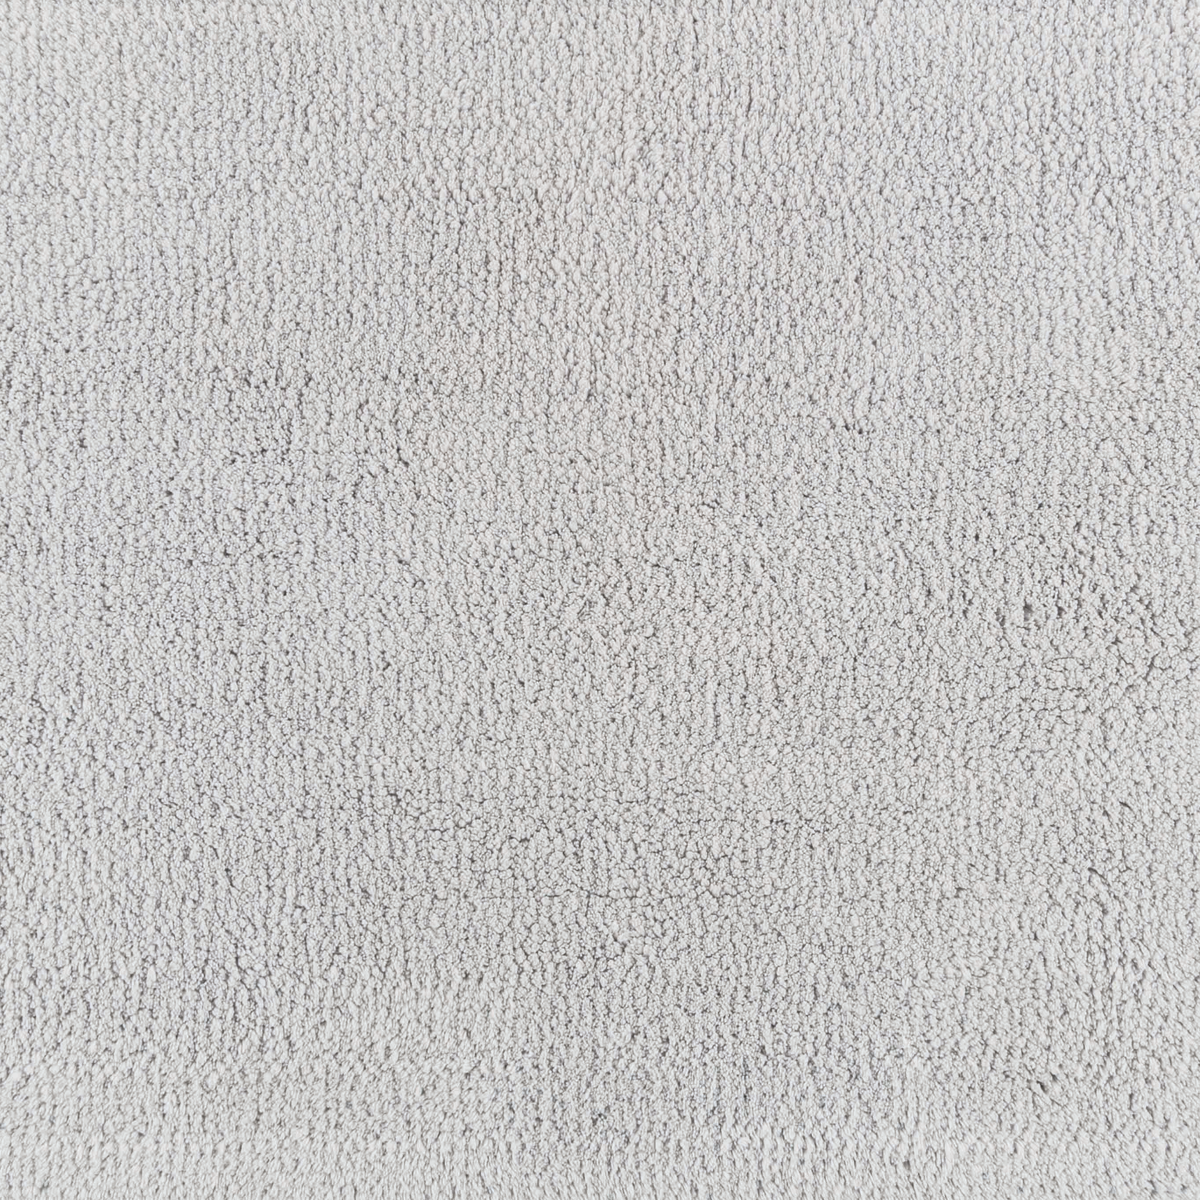 Fabric Closeup of Graccioza Cool Bath Rugs White Color